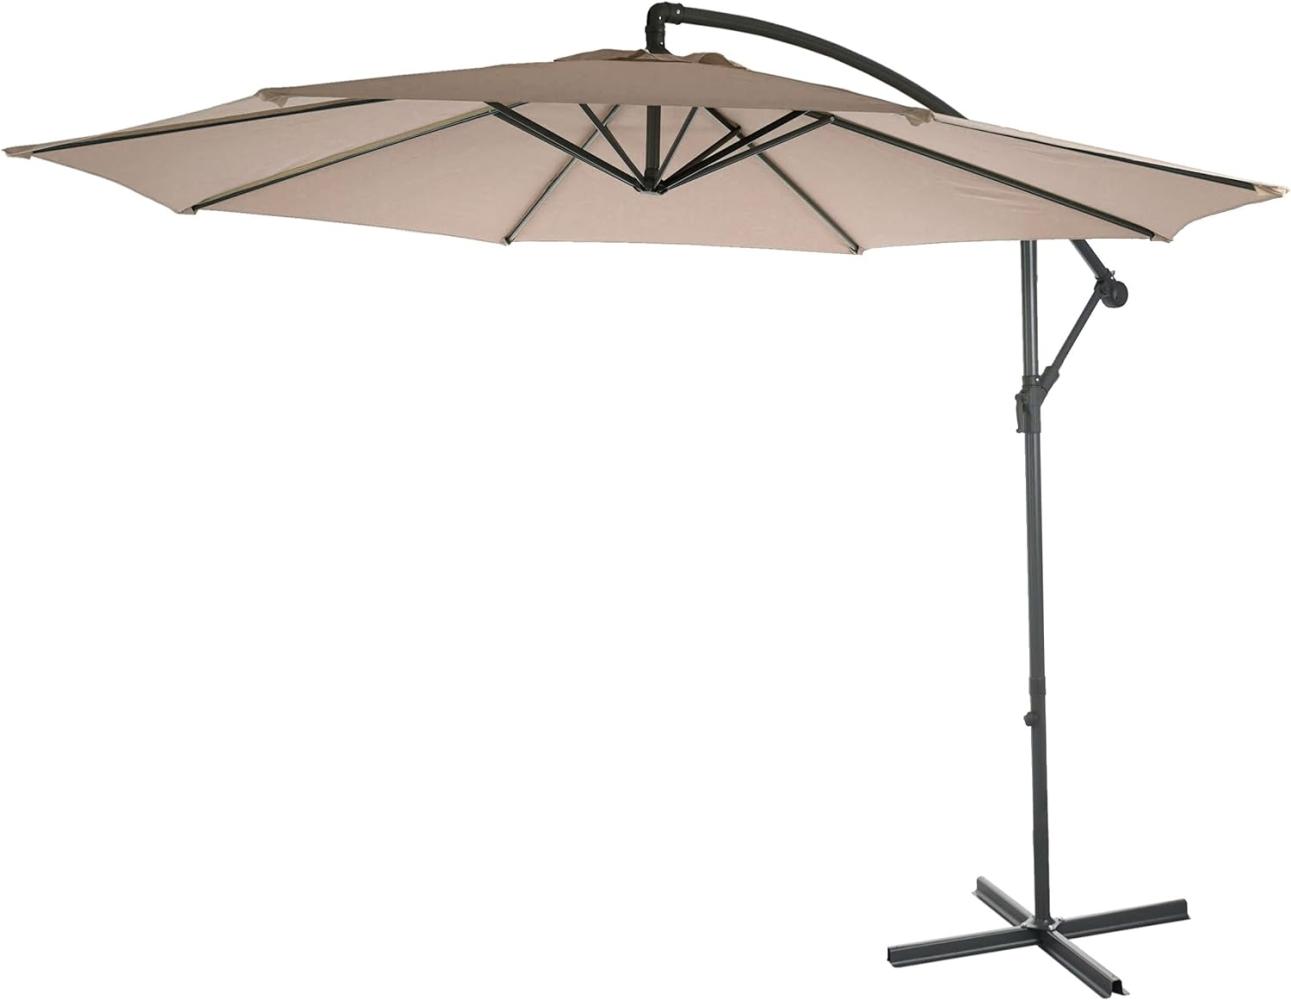 Ampelschirm Acerra, Sonnenschirm Sonnenschutz, Ø 3m neigbar, Polyester/Stahl 11kg ~ sand-beige ohne Ständer Bild 1